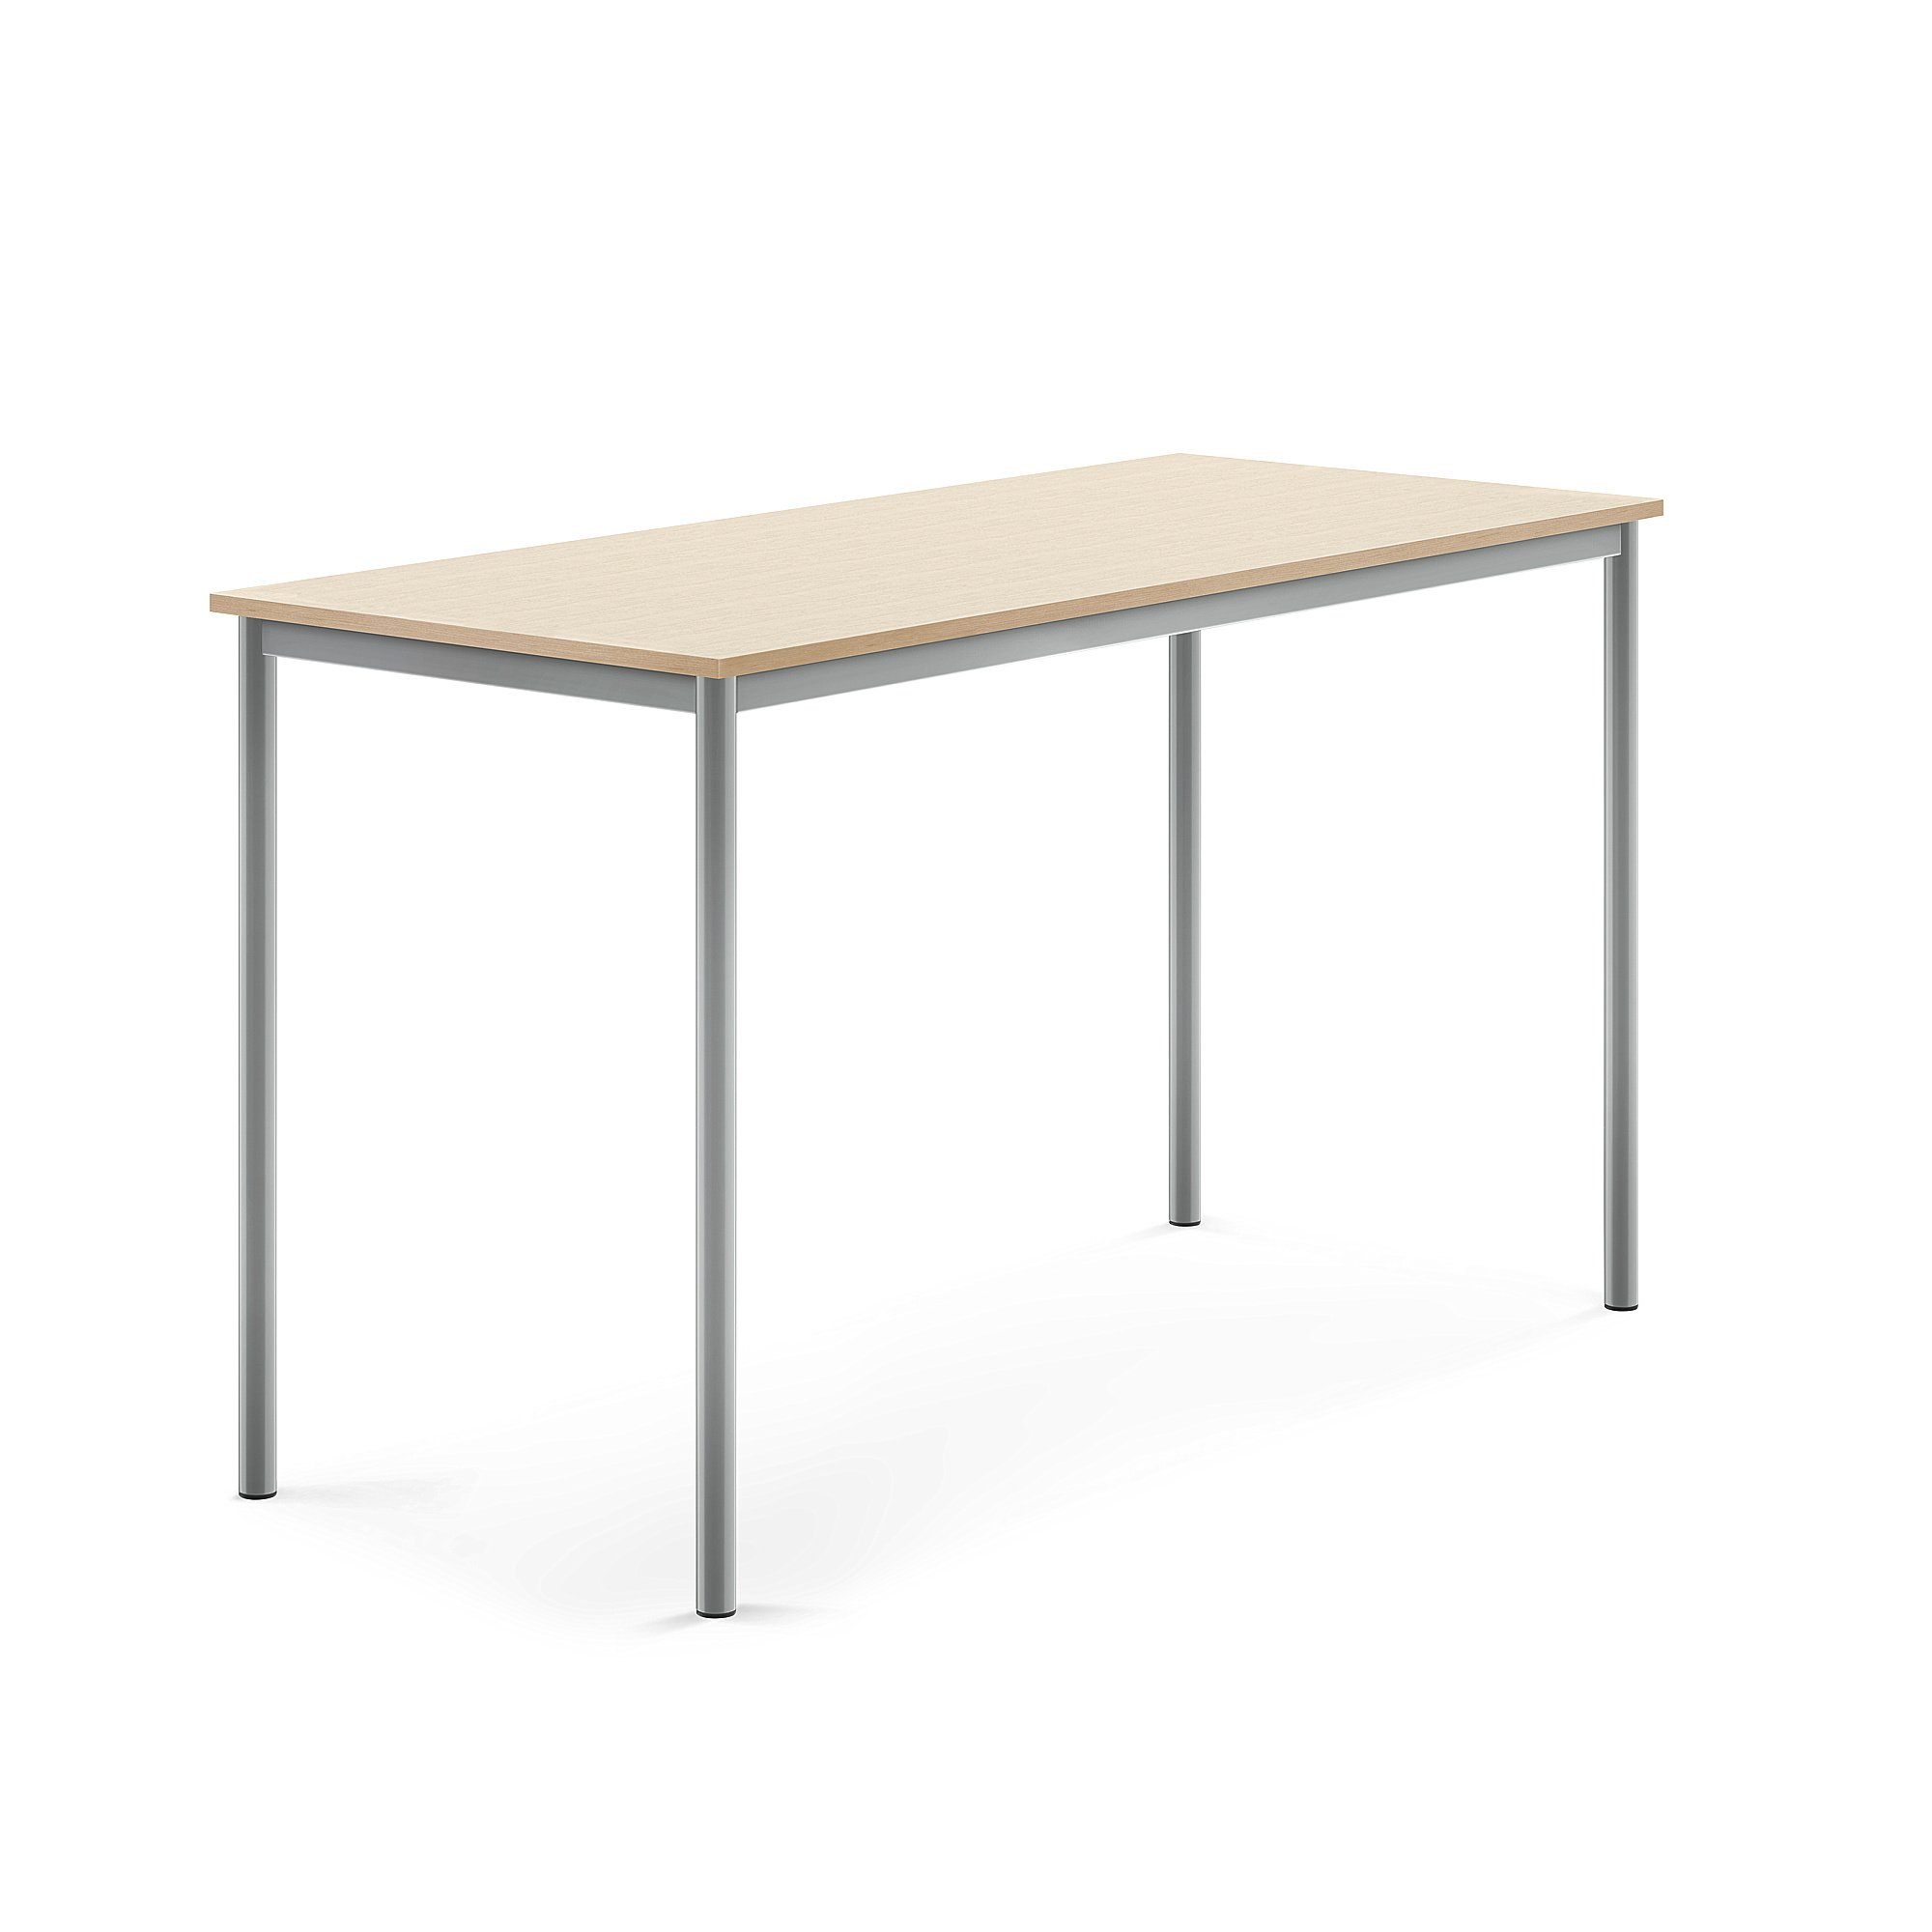 Stůl BORÅS, 1600x700x900 mm, stříbrné nohy, HPL deska, bříza